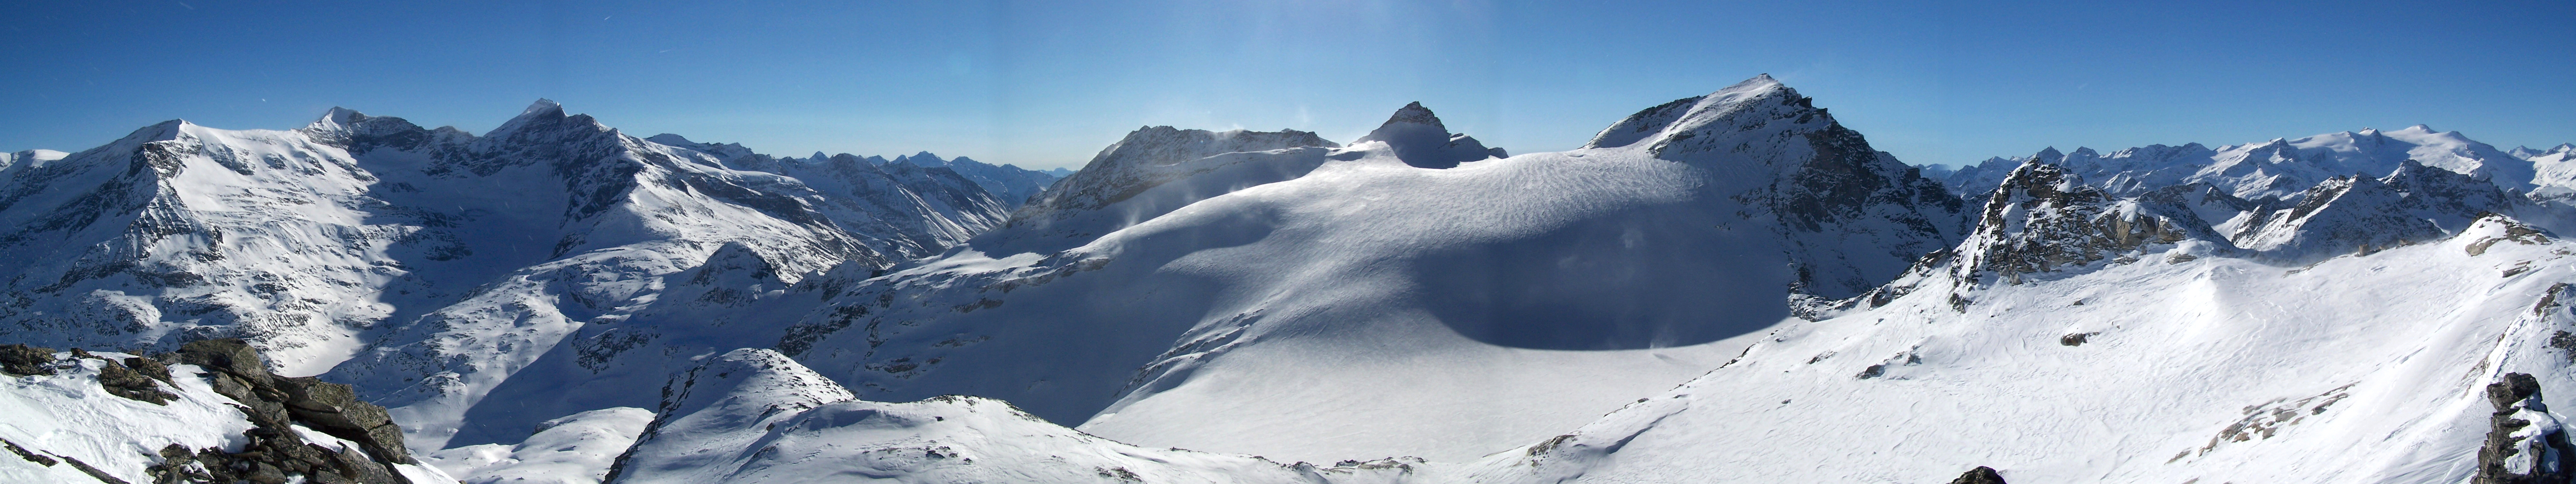 Stubacher Sonnblick Granatspitzgruppe - Hohe Tauern Rakousko panorama 06